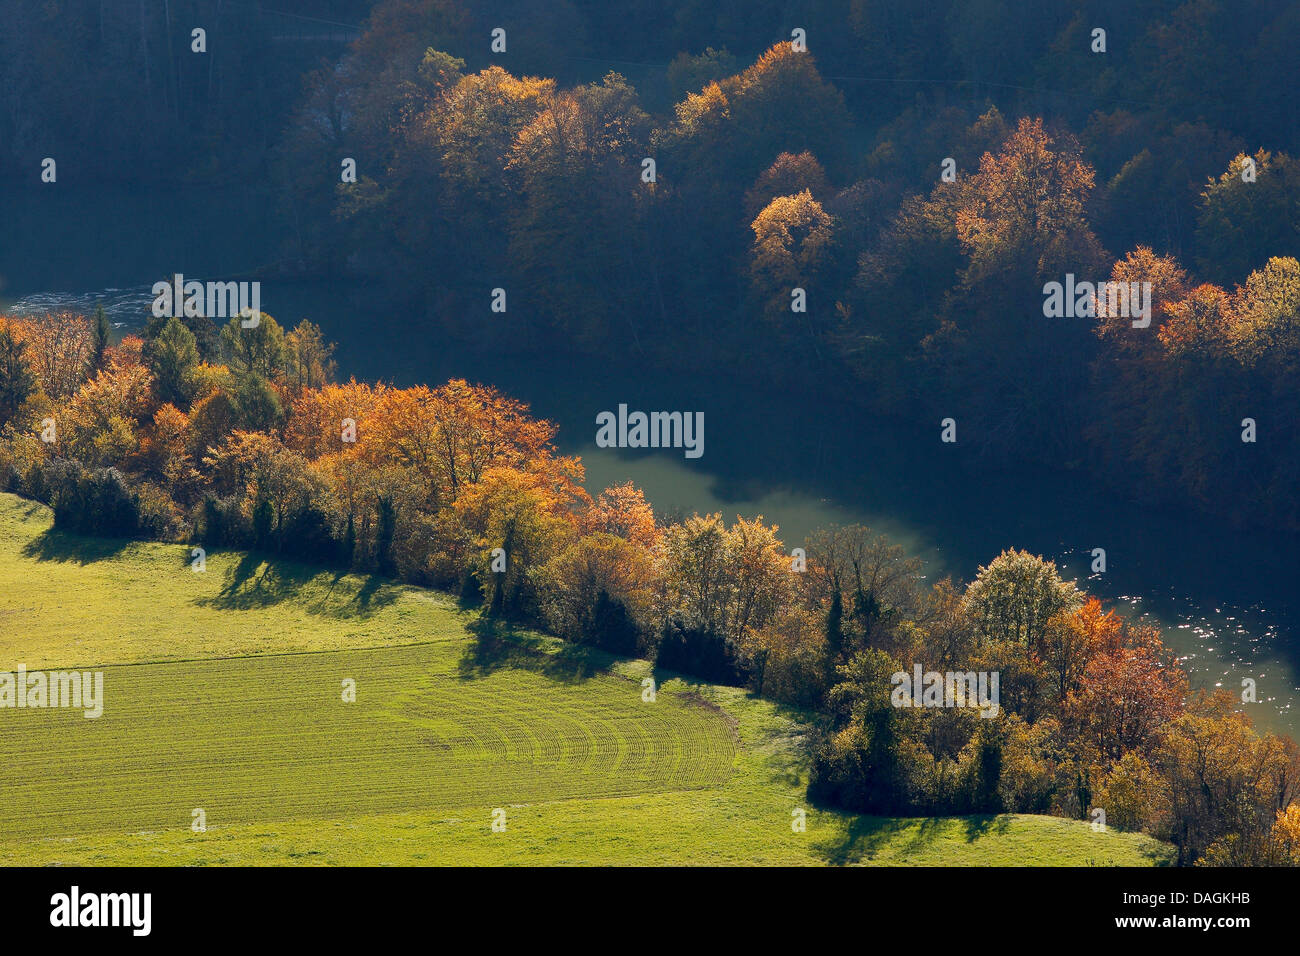 Les arbres d'automne sur la rive, France, Aiguilles d'Arves Banque D'Images